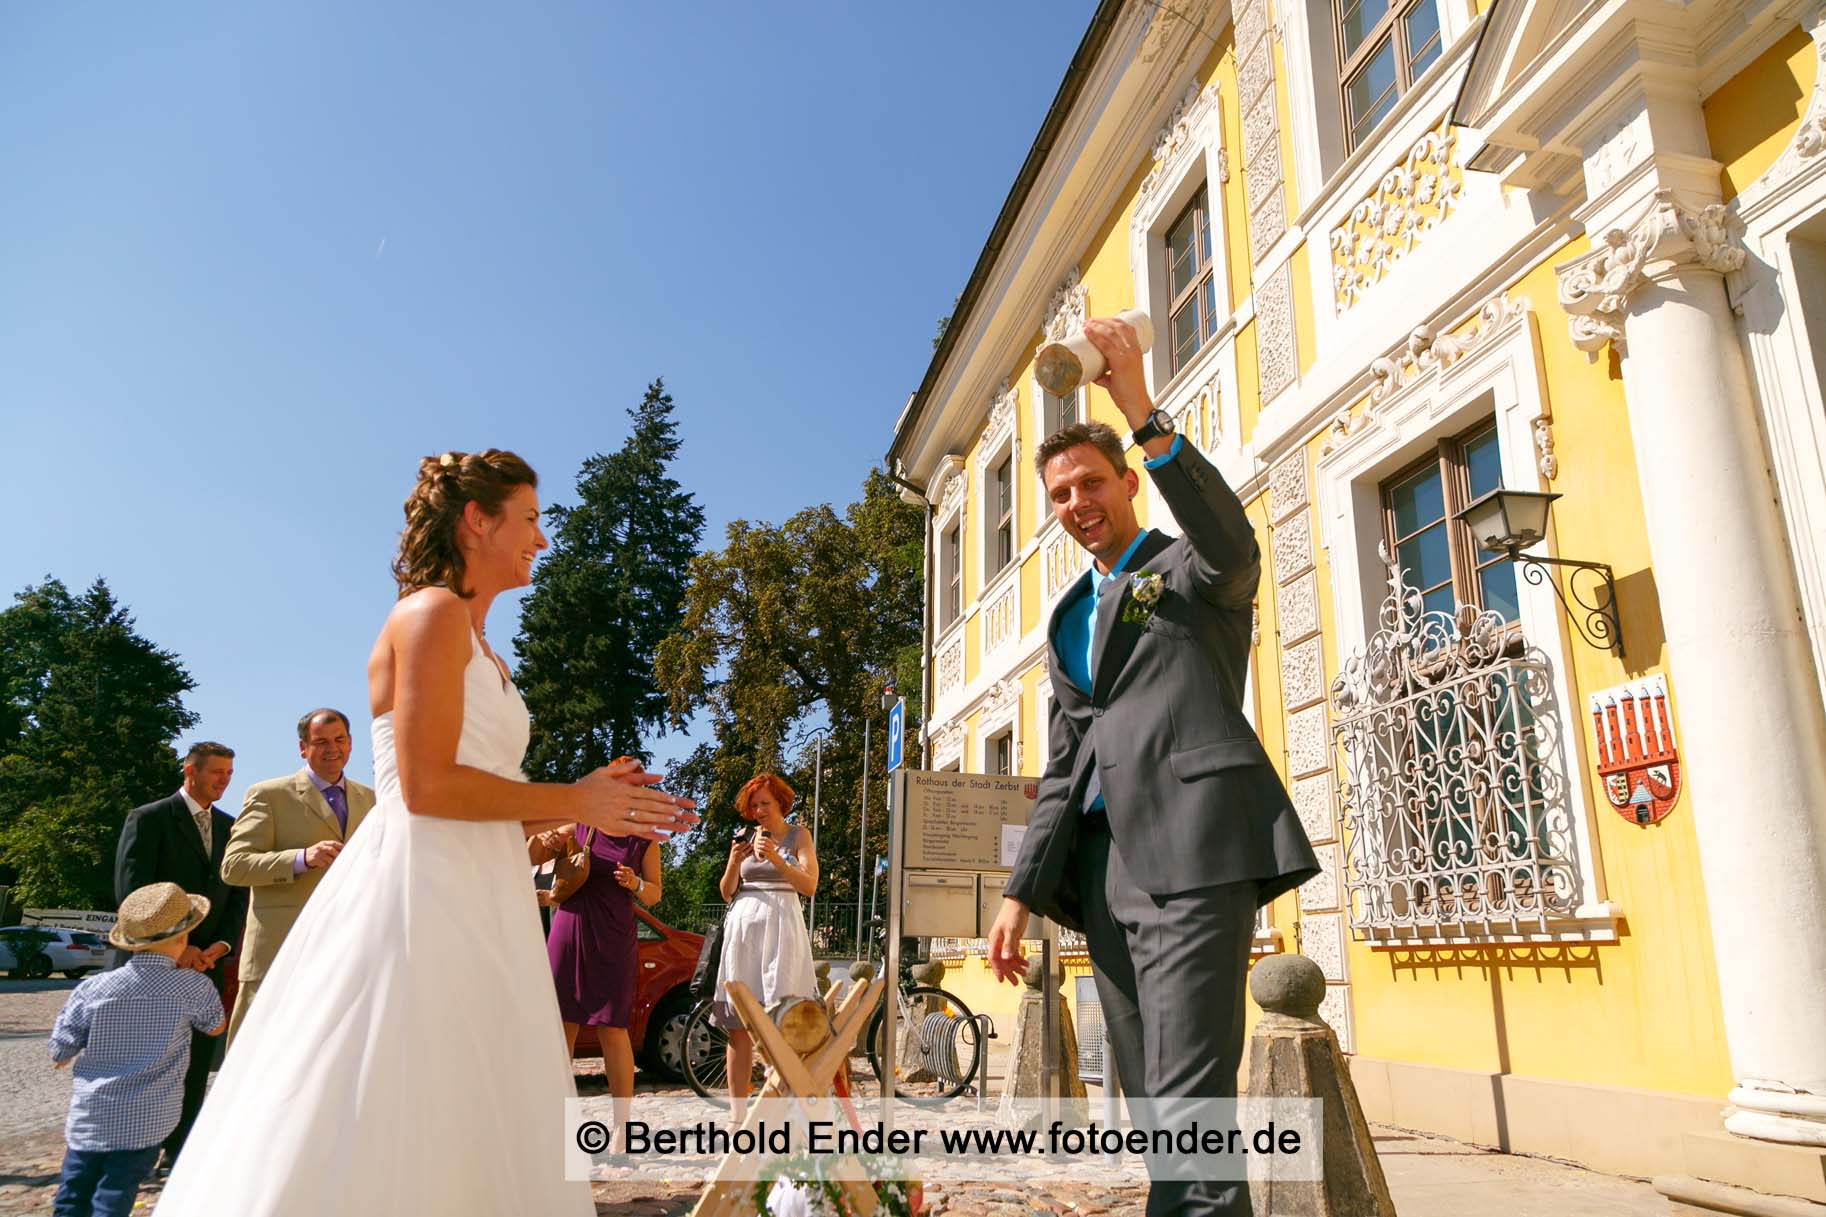 Brautpaar-Shooting in Zerbst - Fotostudio Ender